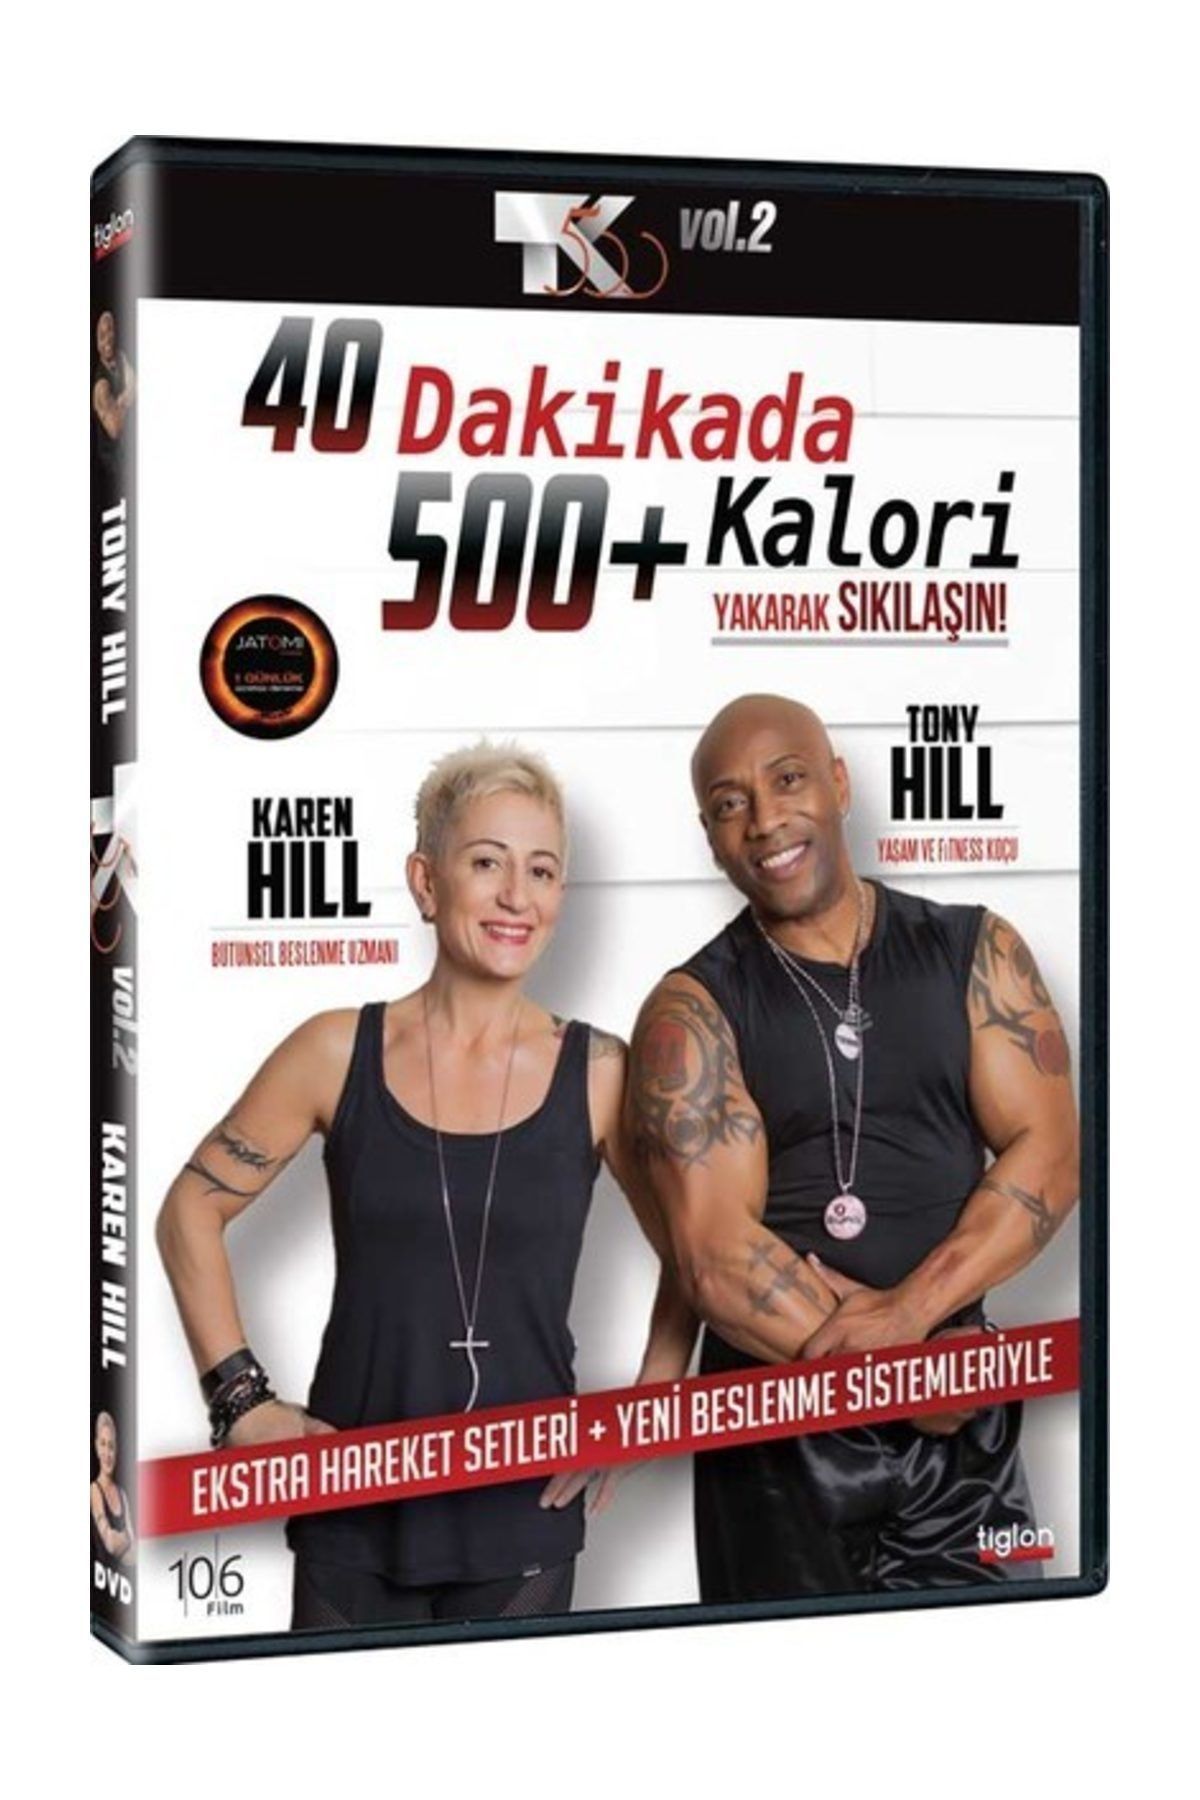 Pal DVD-Tk 500 Vol 2 - 40 Dakikada 500+ Kalori Yakarak Sıkılaşın